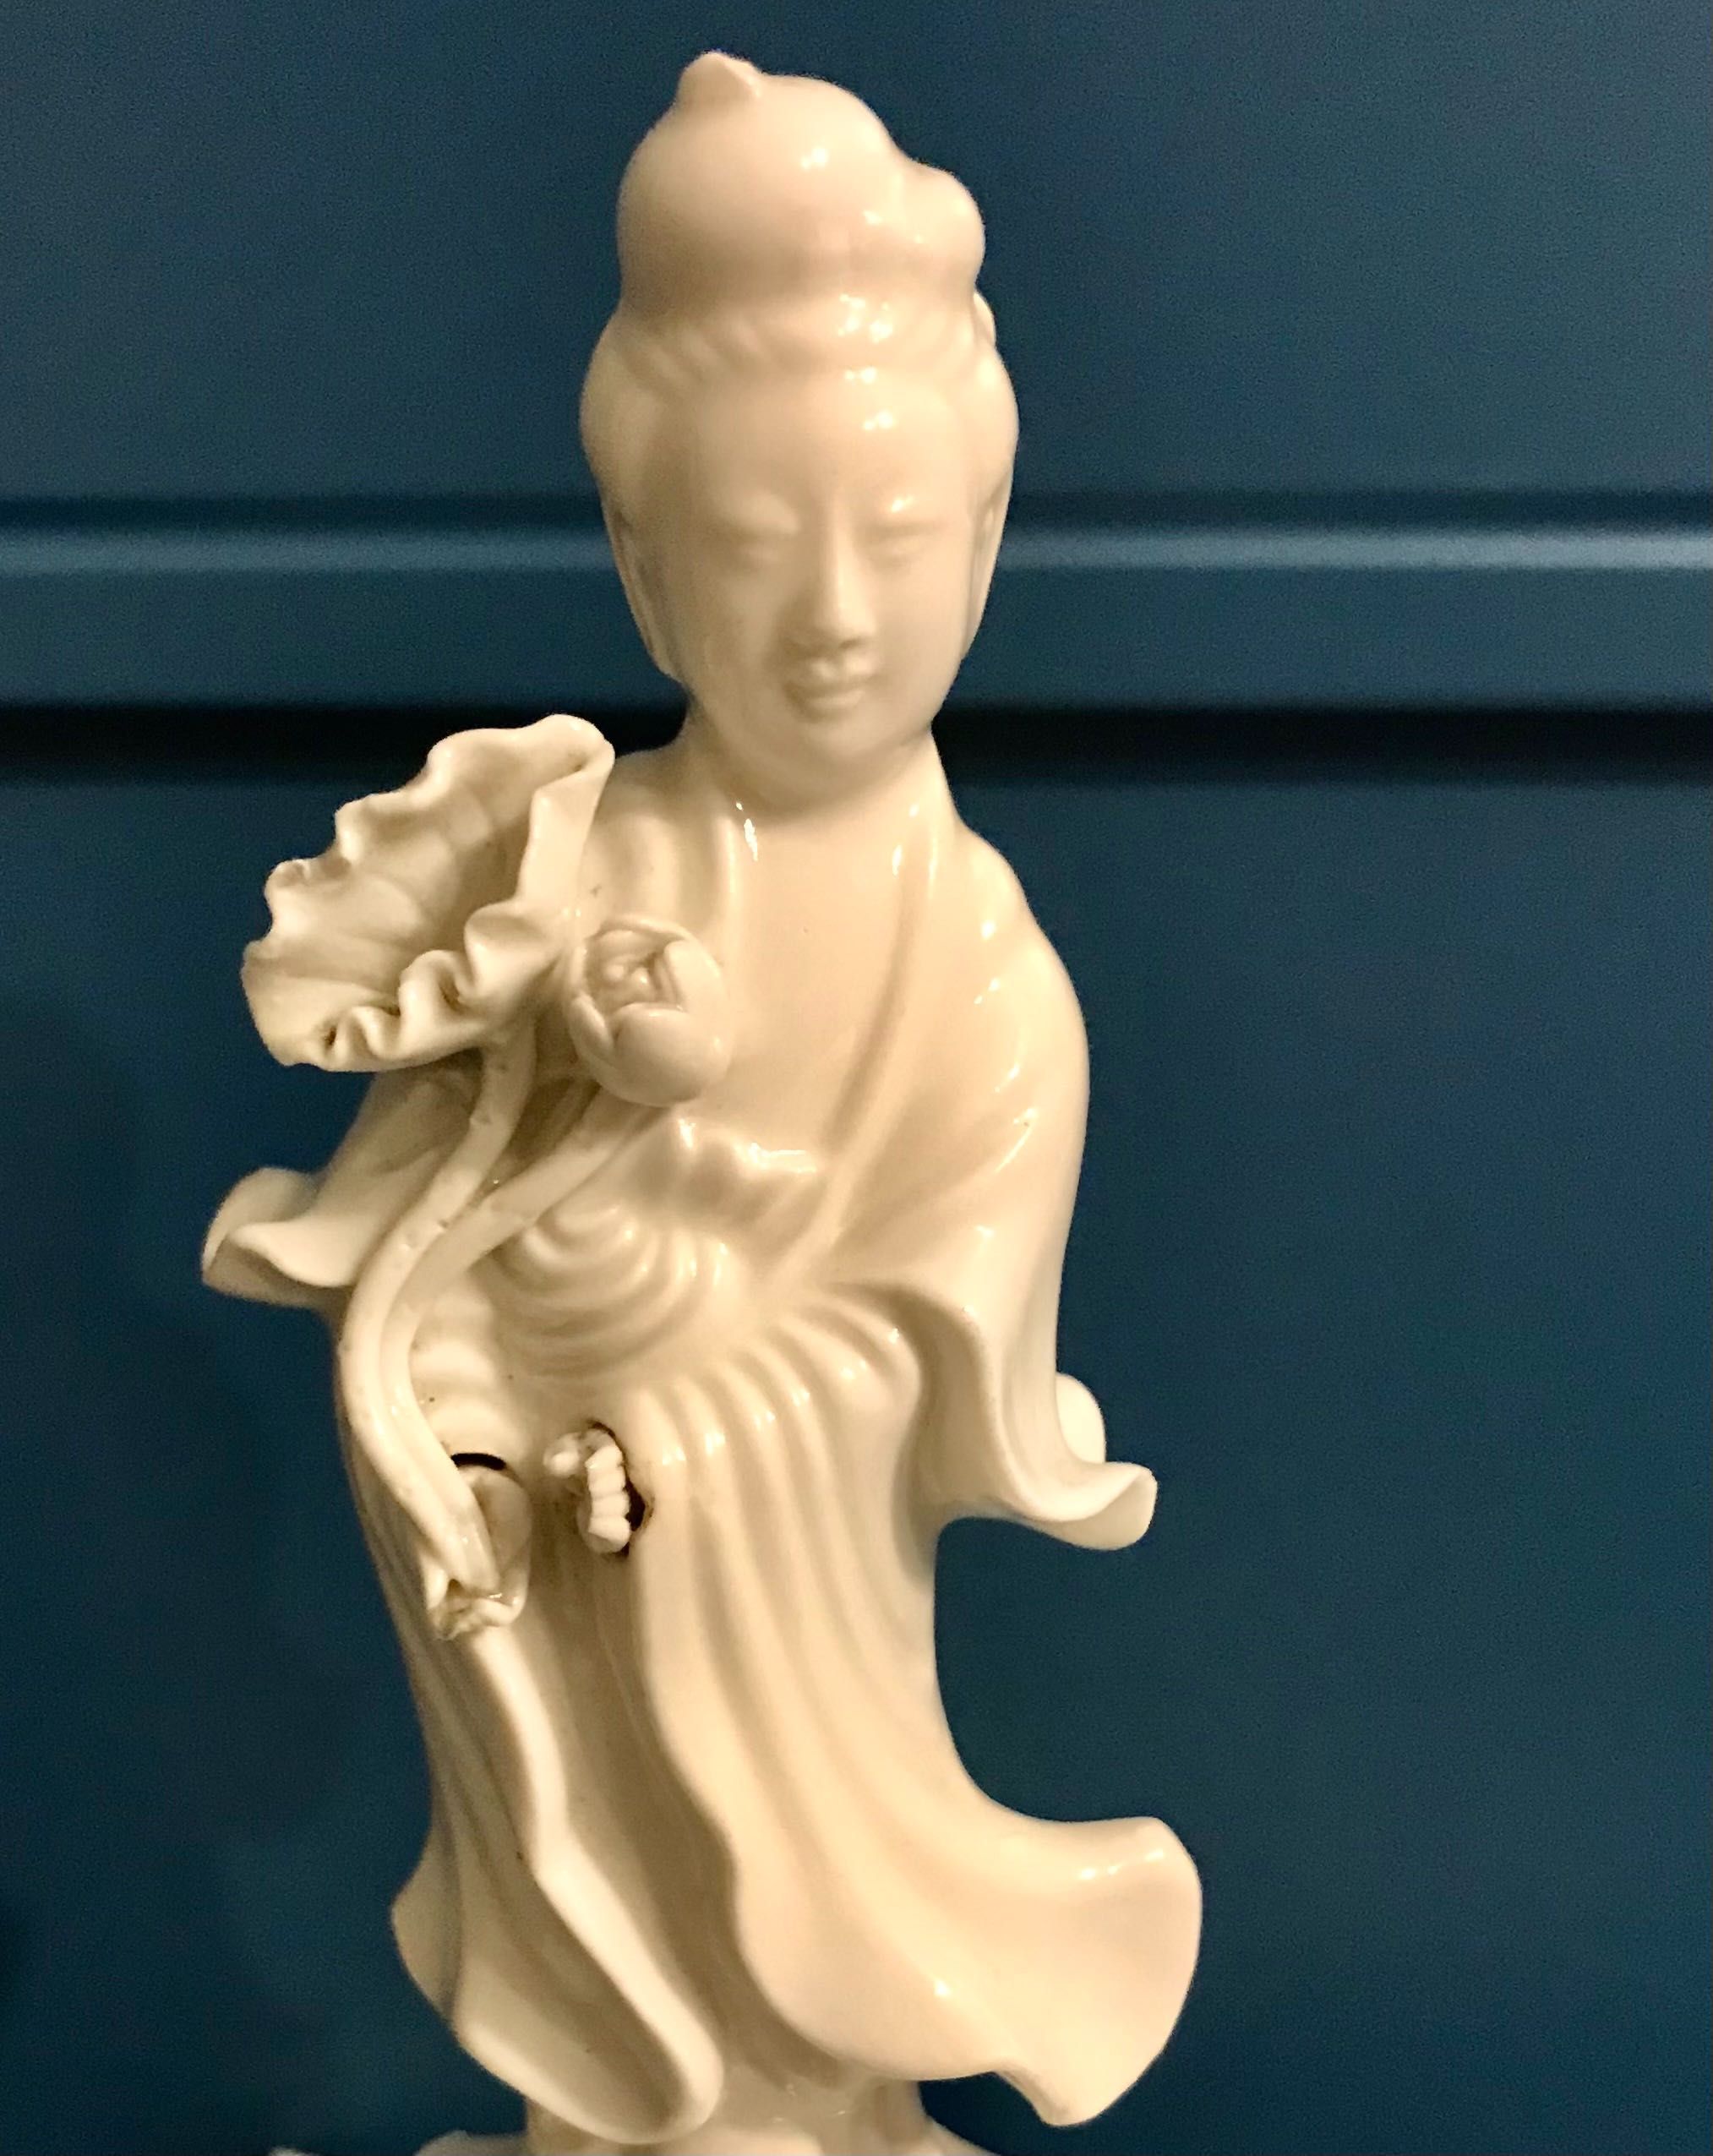 Porcelanowa figurka bogini Kuan-yin, biała porcelana te-hua, XIX/XX w.